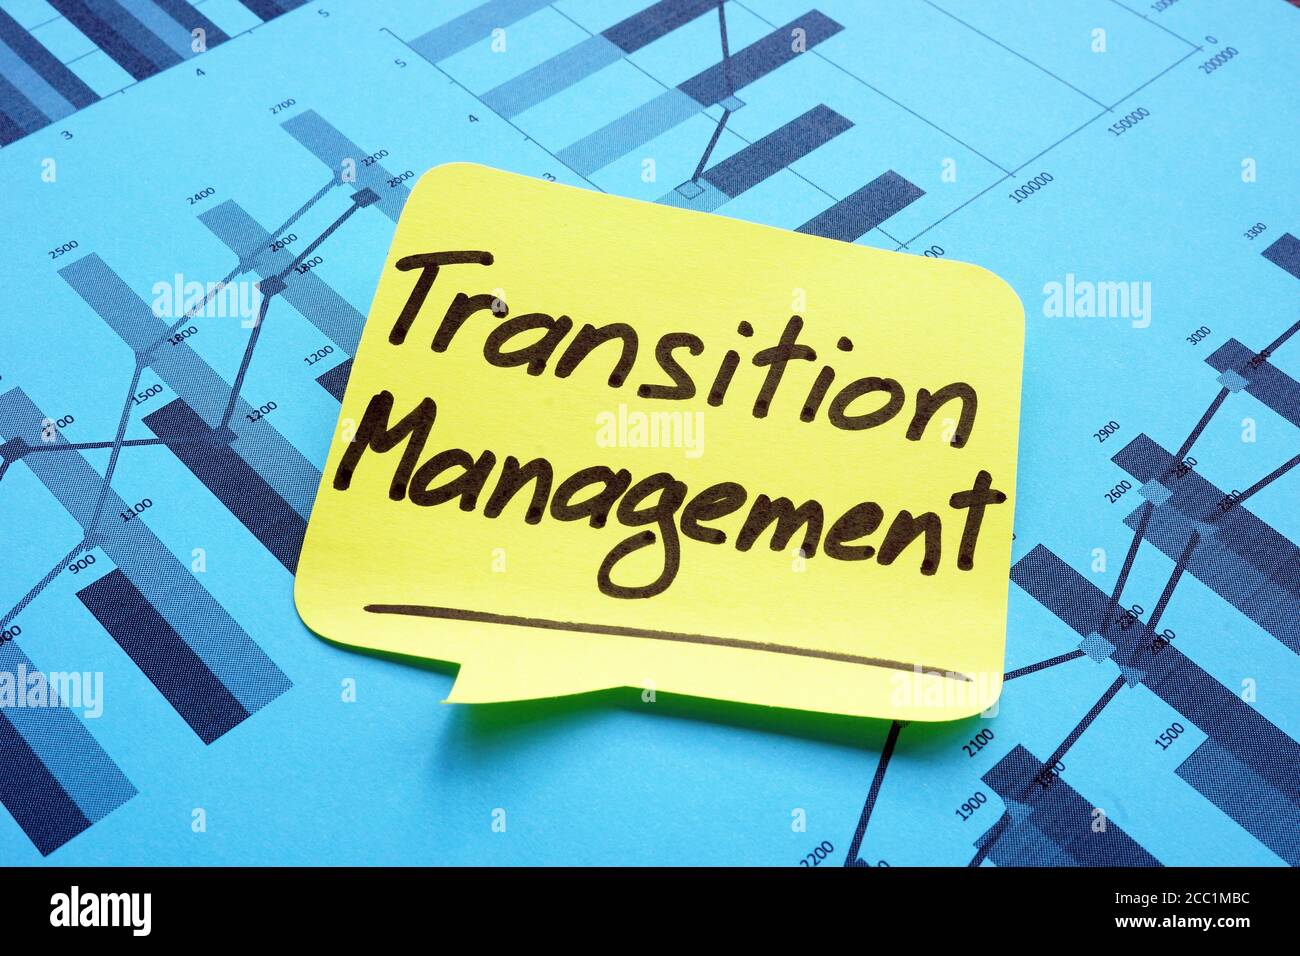 Transition Management handgeschrieben auf dem gelben Memostick. Stockfoto